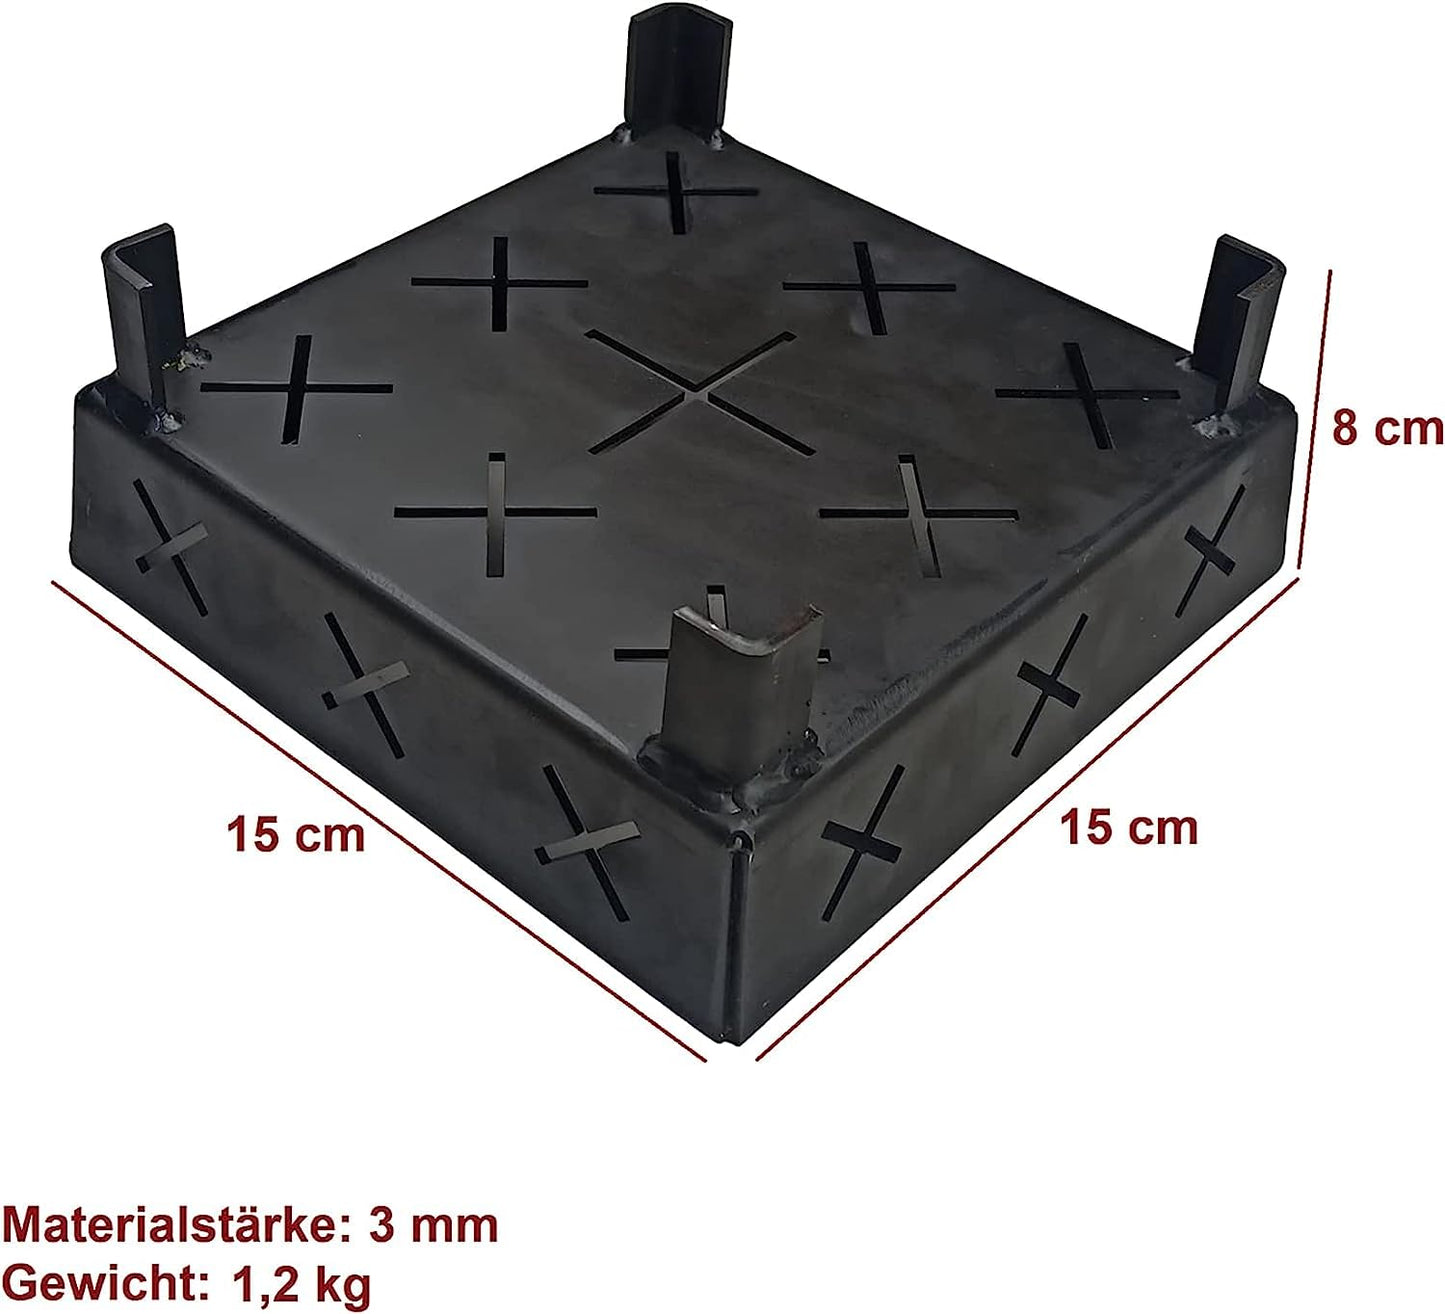 FEUERKAISER 3 mm Dicke Stahl Anzündkorb, Pelletkorb, Pelletbrenner für Kamin, Ofen und Grill, geeignet im Innen- und Außenbereich mit Brennstoff (15 x 15 x 8 cm)